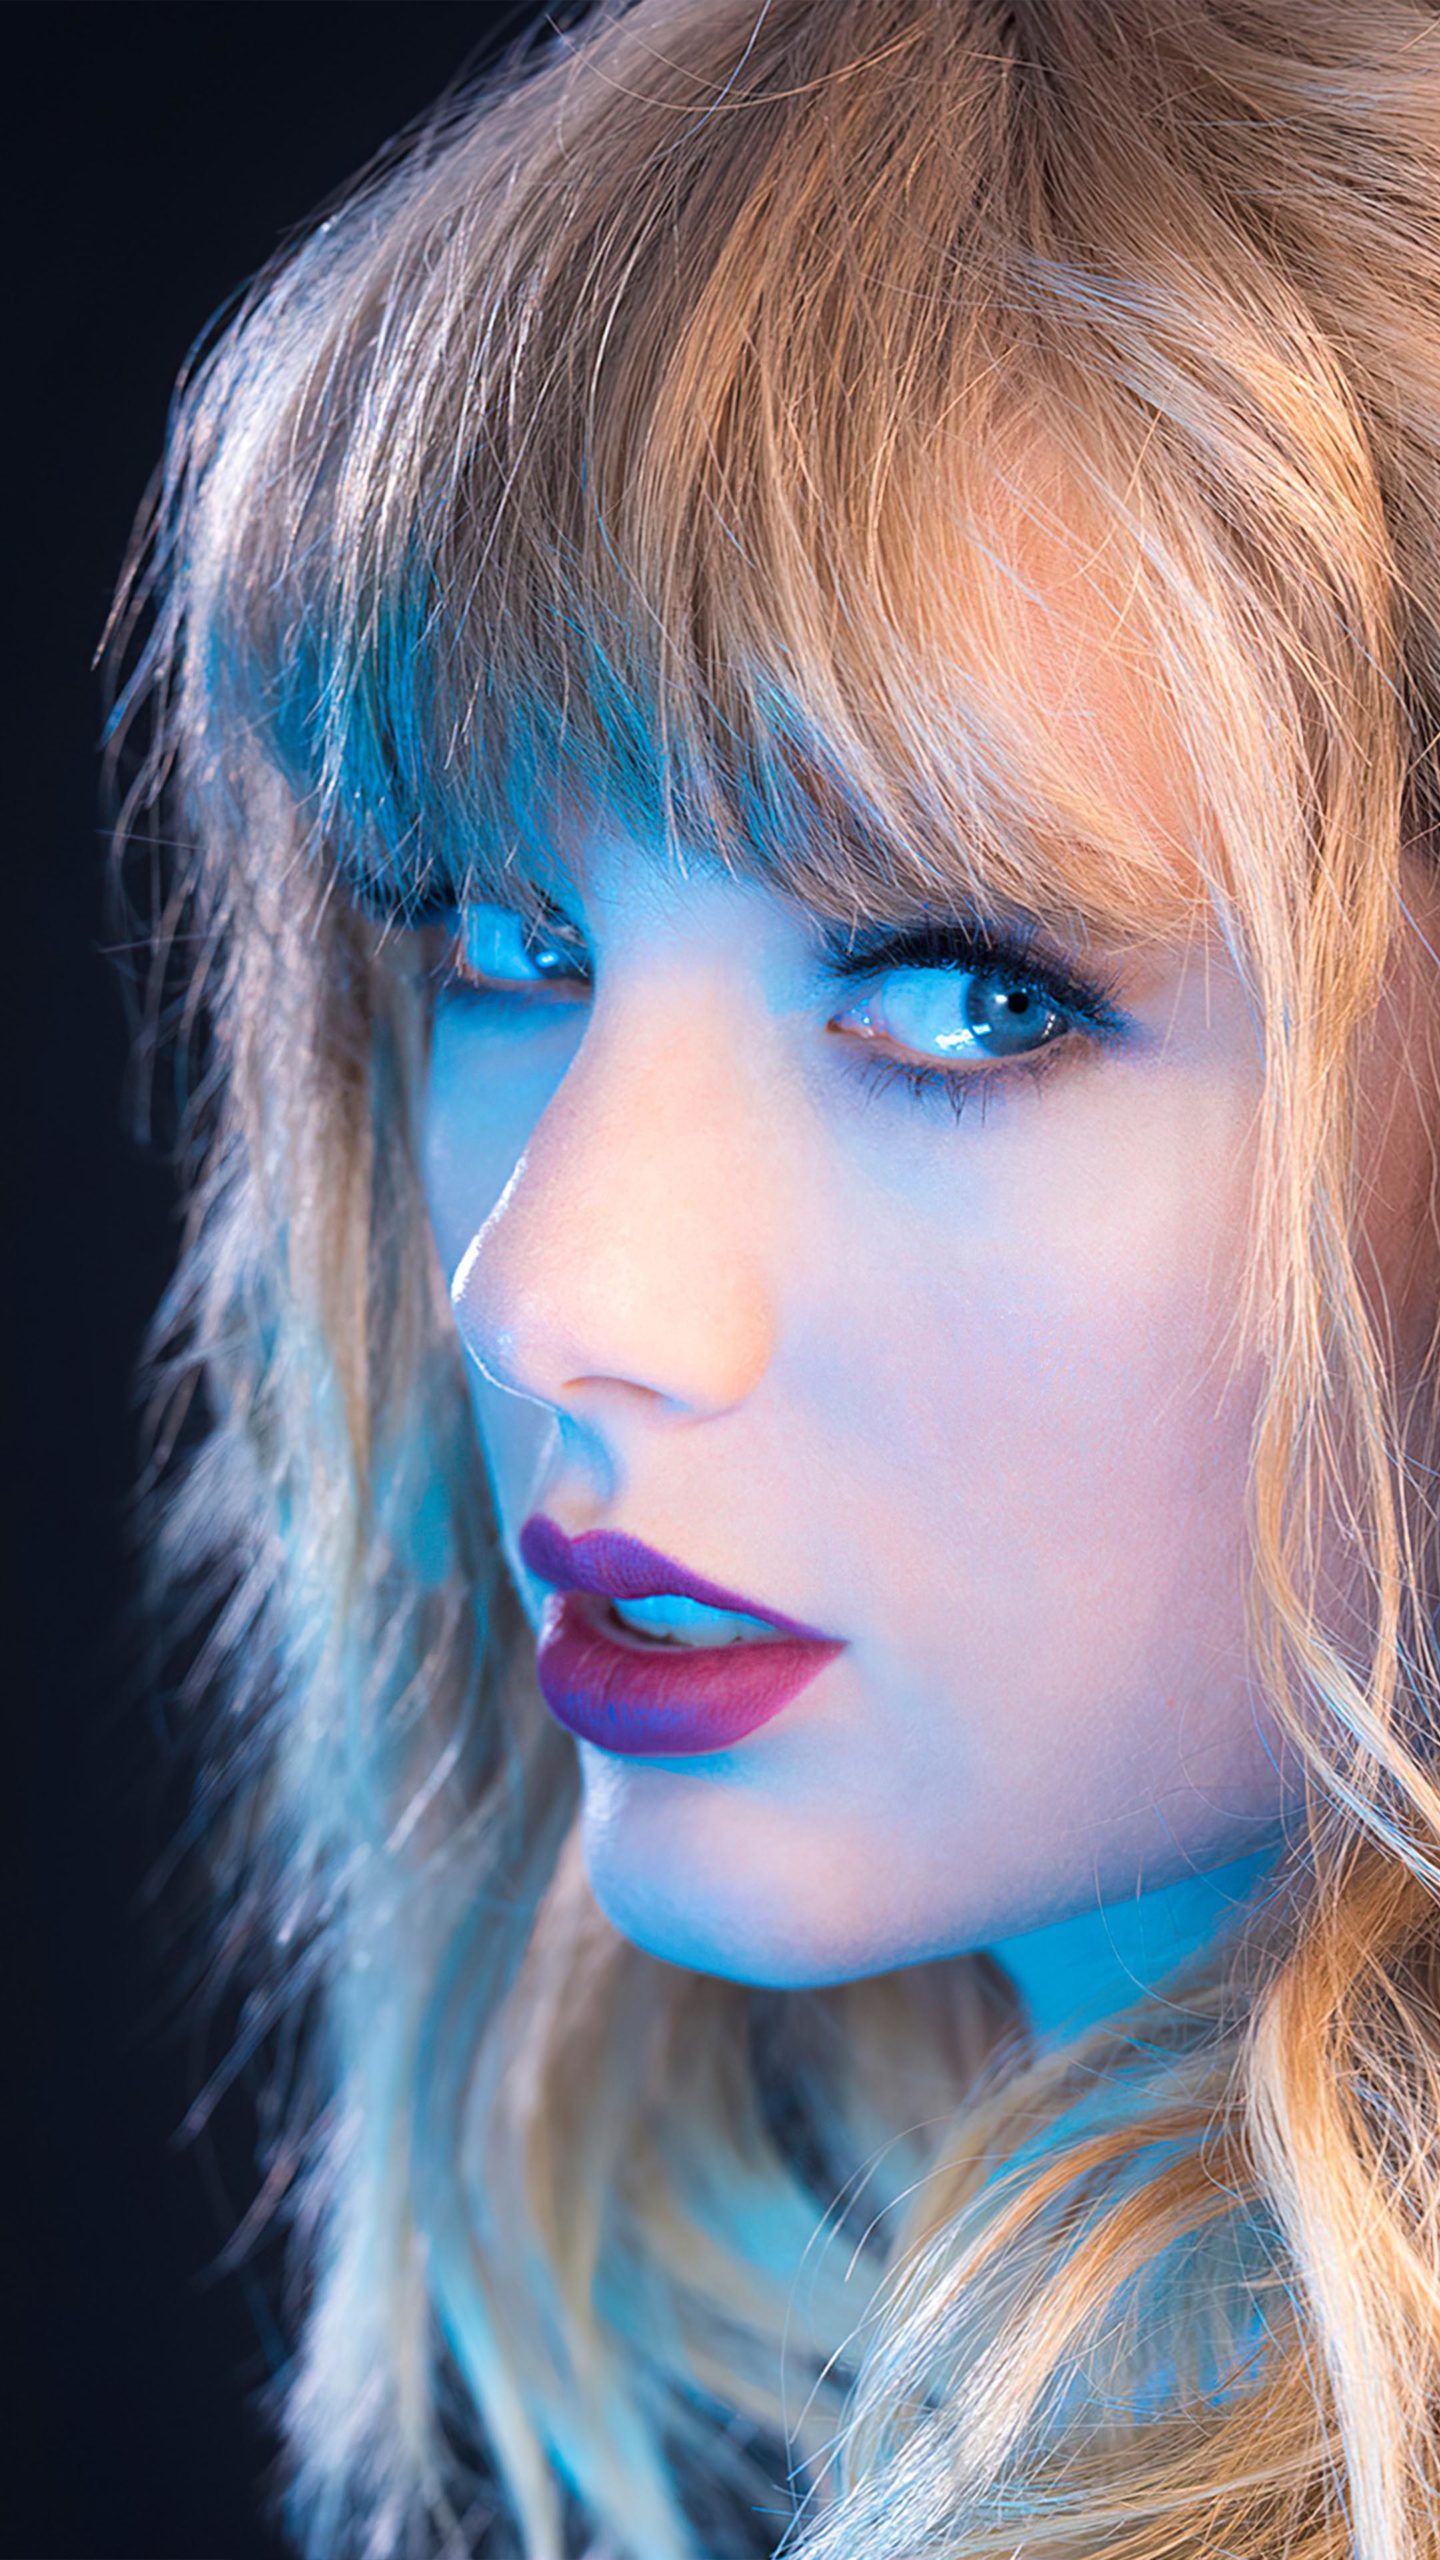 Beautiful Taylor Swift Blue Neon 4K Ultra HD Mobile Wallpaper. Taylor swift photohoot, Beautiful taylor swift, Taylor swift